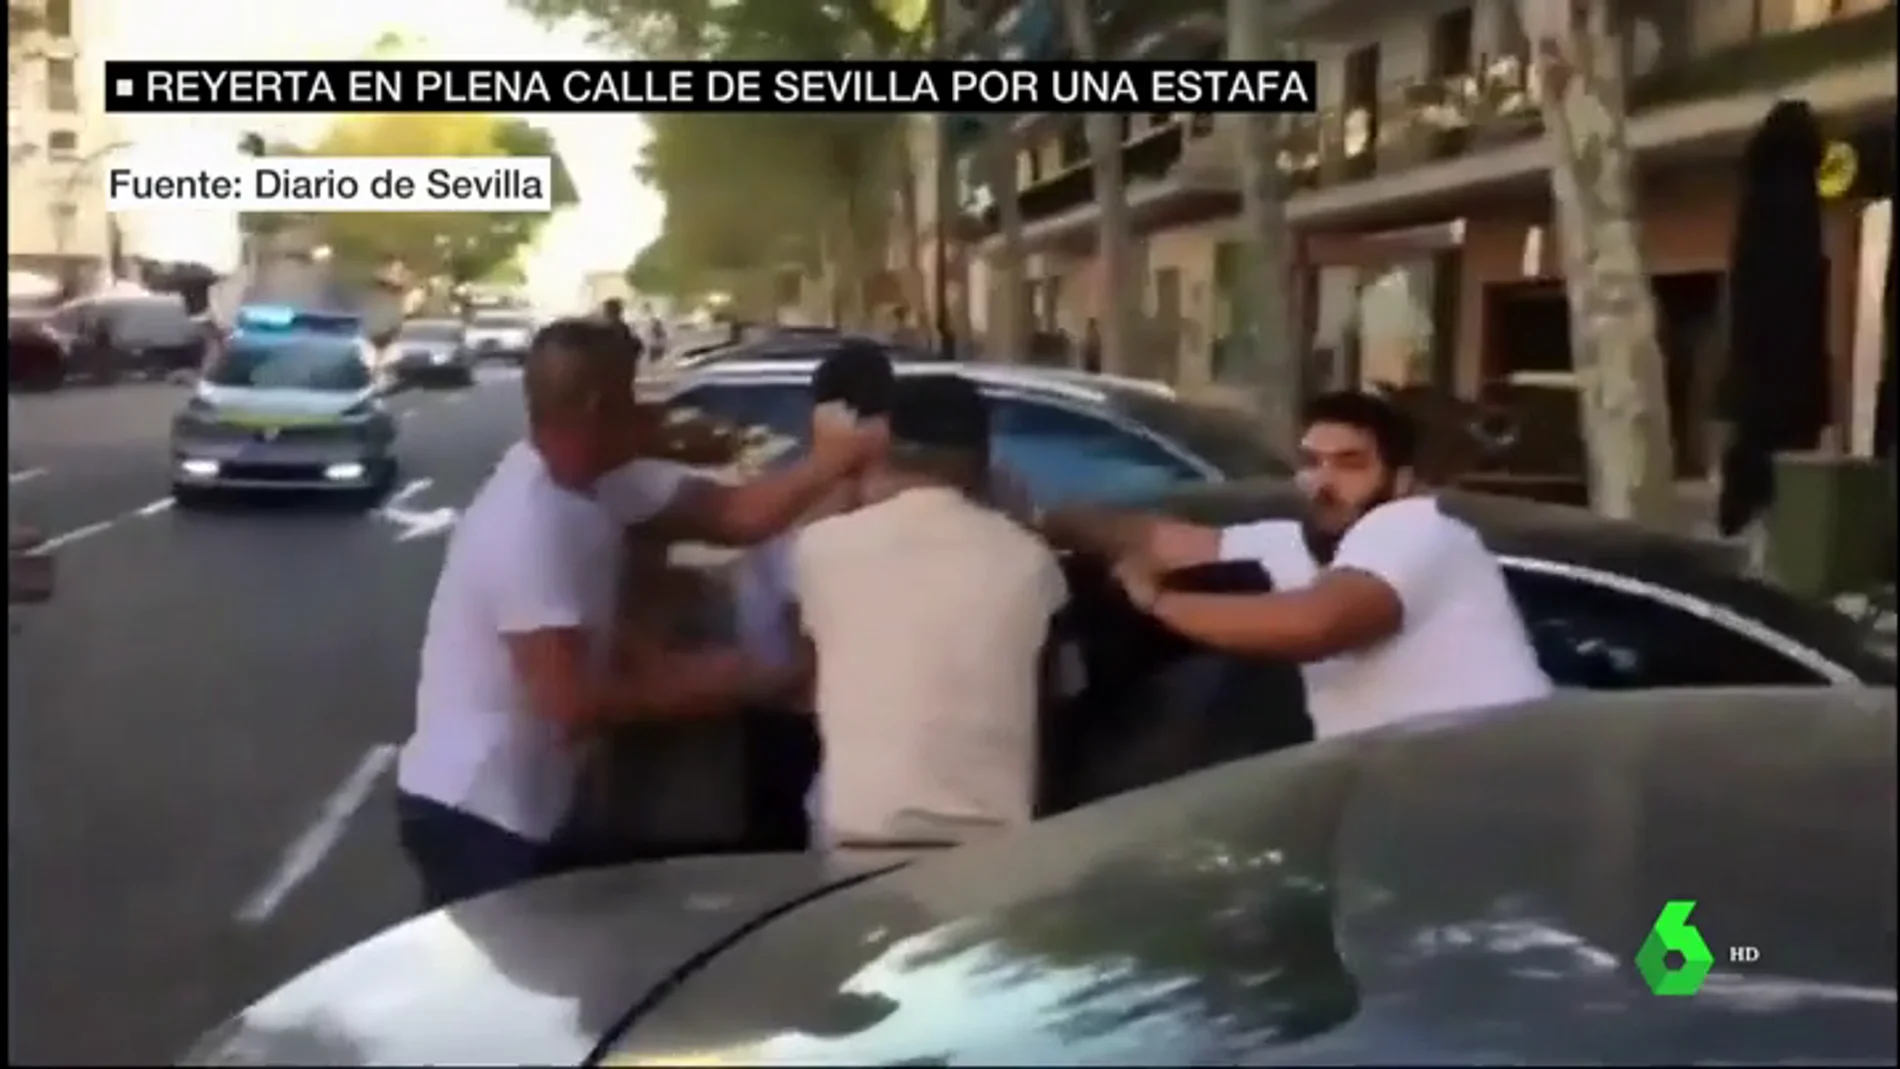 Reyerta en plena calle en Sevilla por un supuesto fraude: una familia se enfrenta a dos hombres que les estafaron 69.000 euros